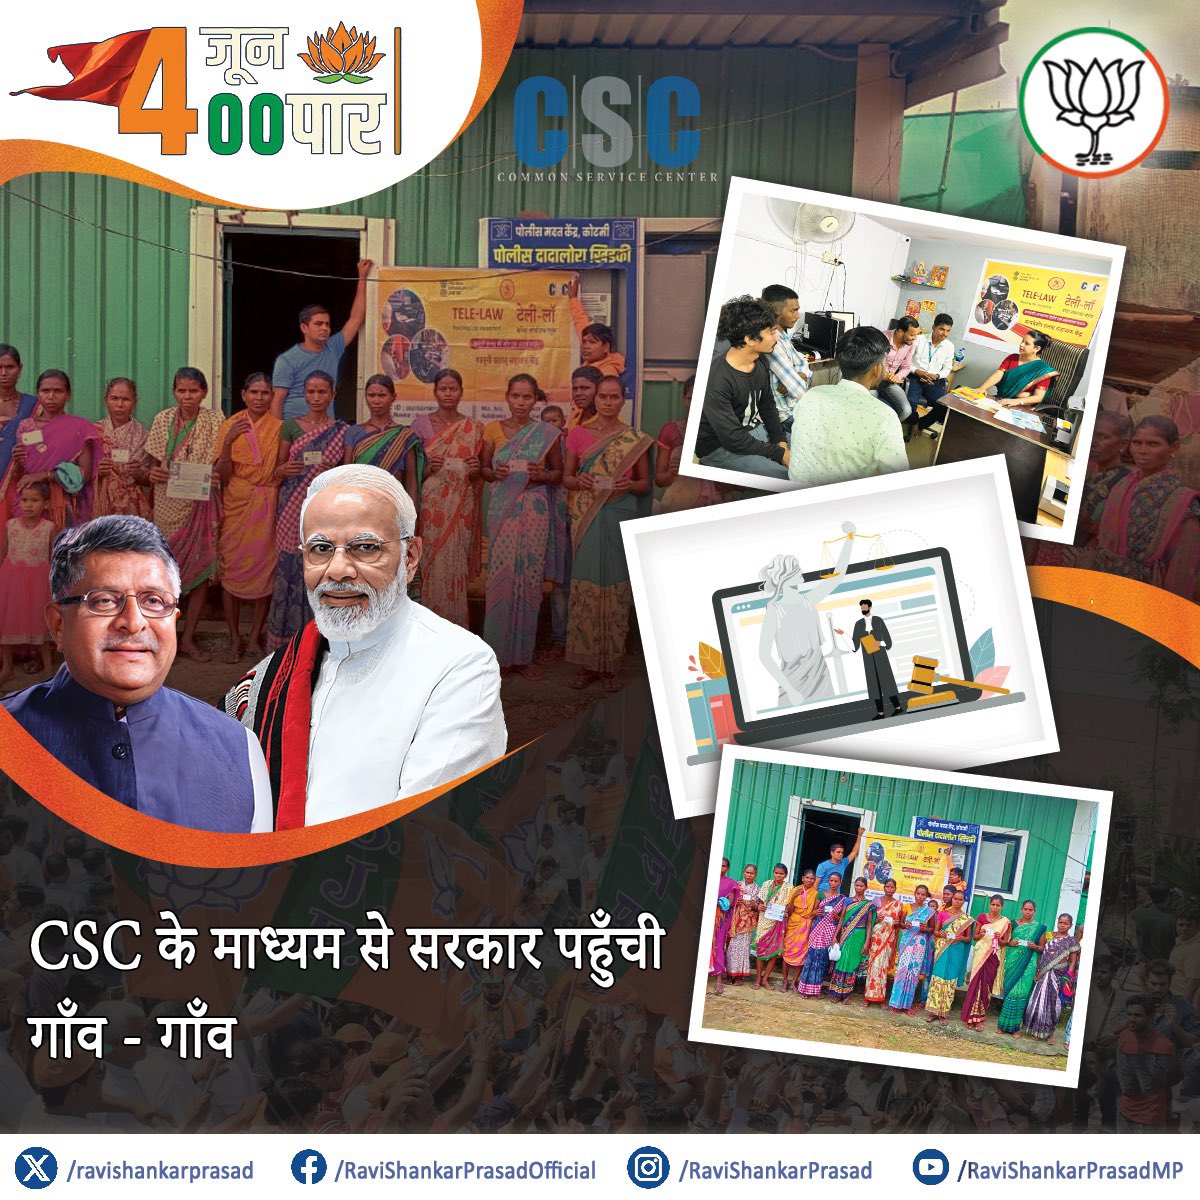 प्रधानमंत्री श्री @narendramodi जी के डिजिटल इंडिया के सपने को साकार करने का सशक्त माध्यम बना कॉमन सर्विस सेंटर (CSC)